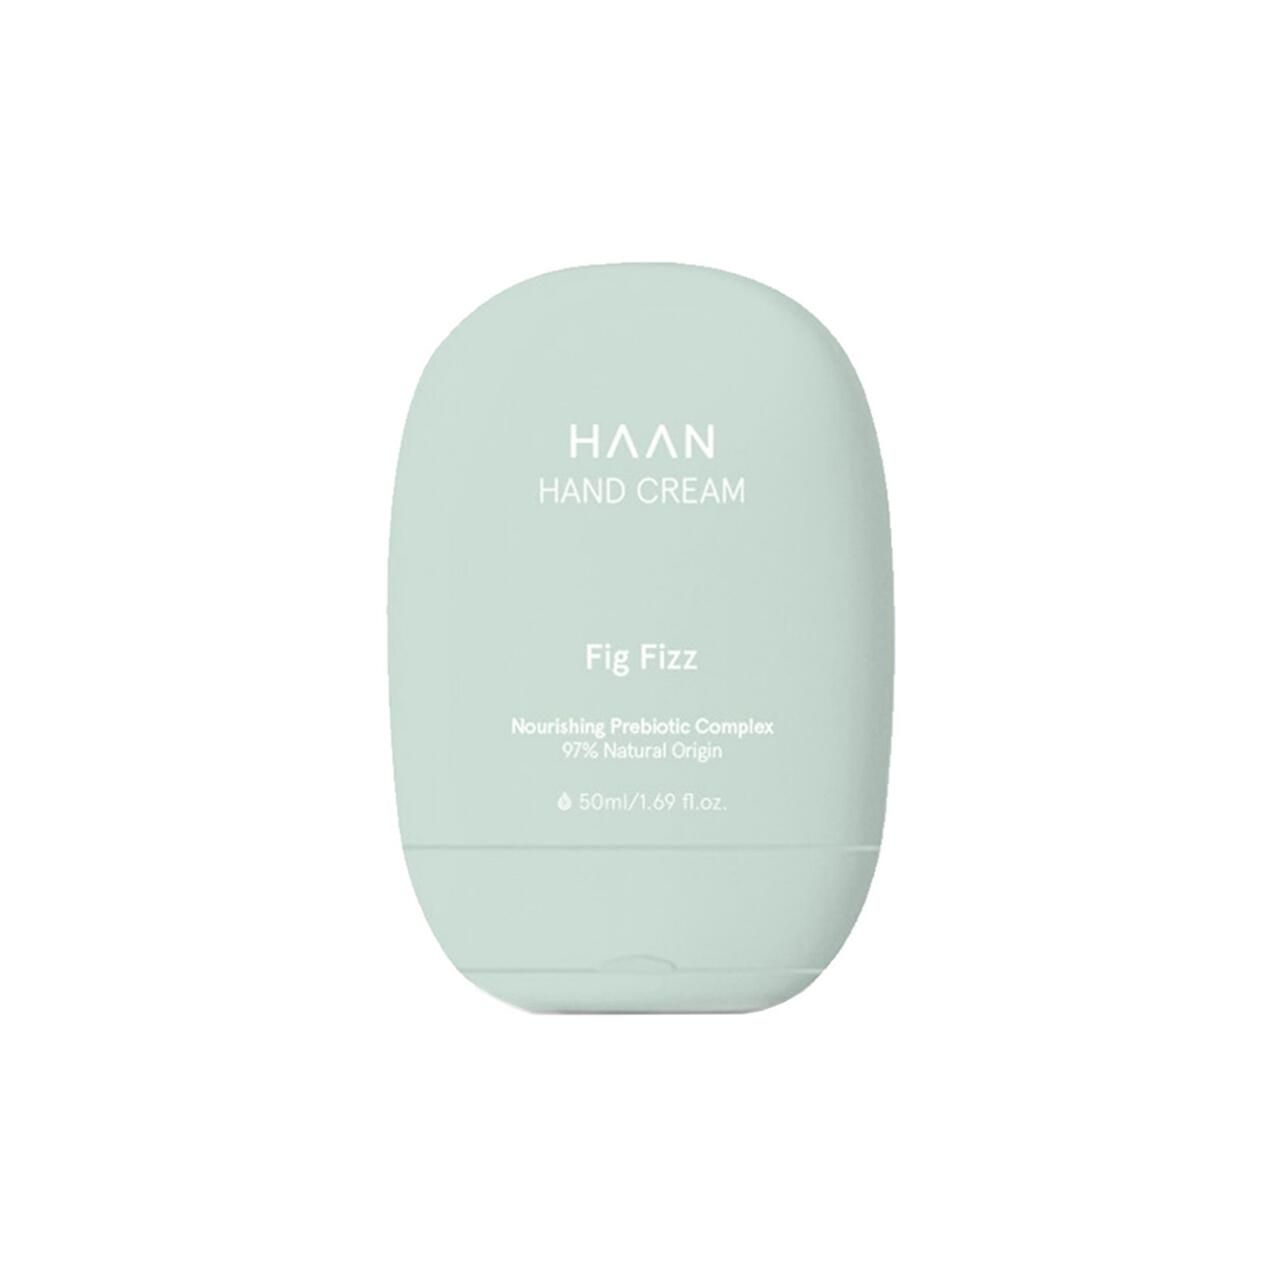 HAAN Hand Cream Hand Cream Fig Fizz 